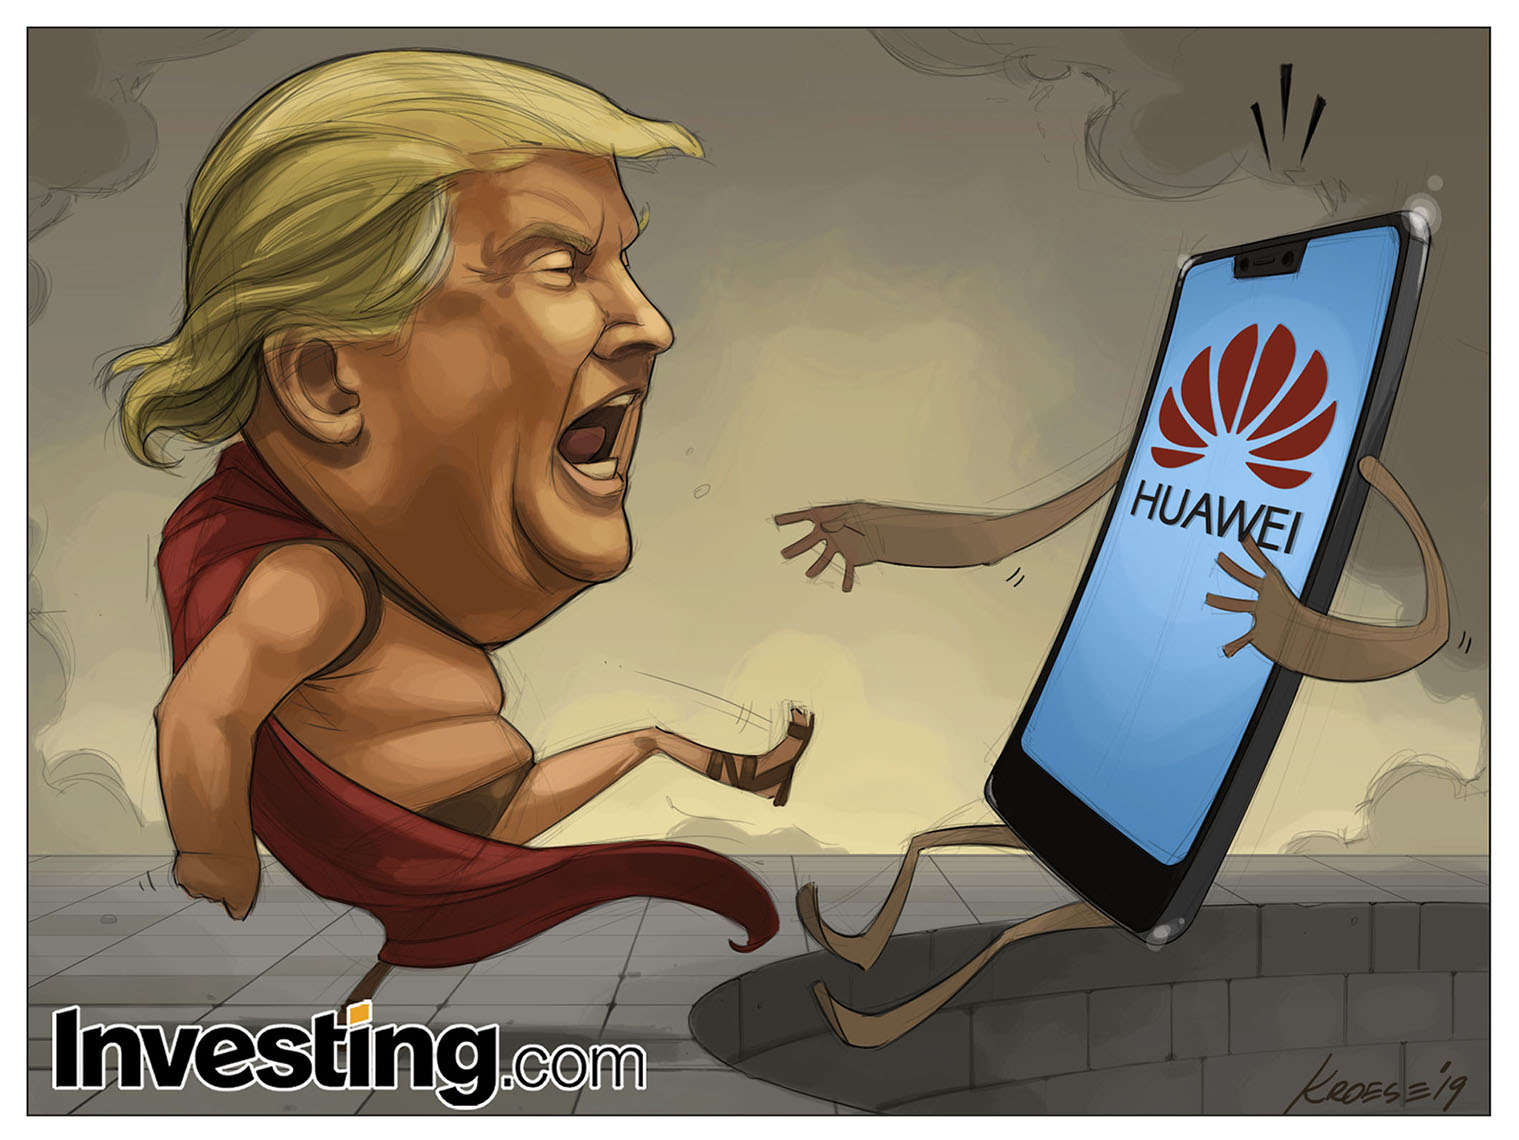 Trump mete a Huawei en la lista negra y sacude a los mercados